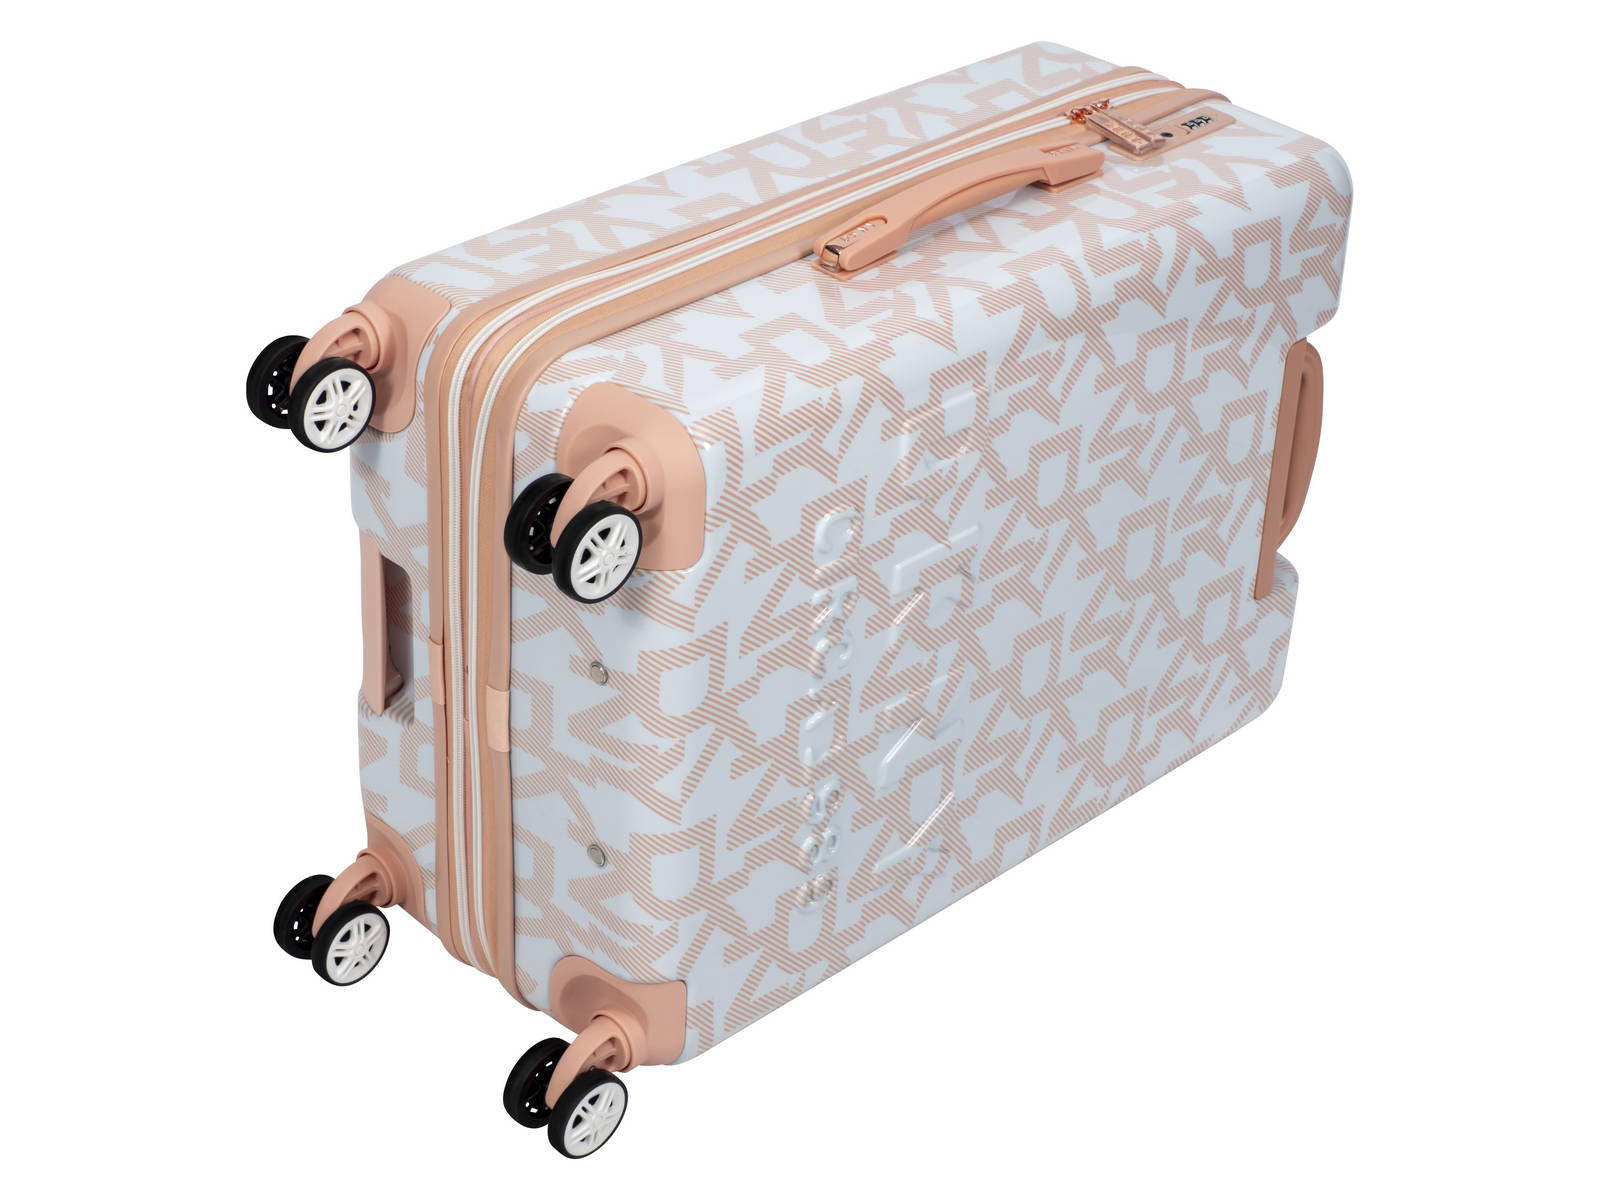 ✮✮בלעדי בישראל✮✮ מזוודה בינונית 24" אופנתית מבית מעצבת העל Donna Karan DKNY דגם SIGNATURE BIG LOGO